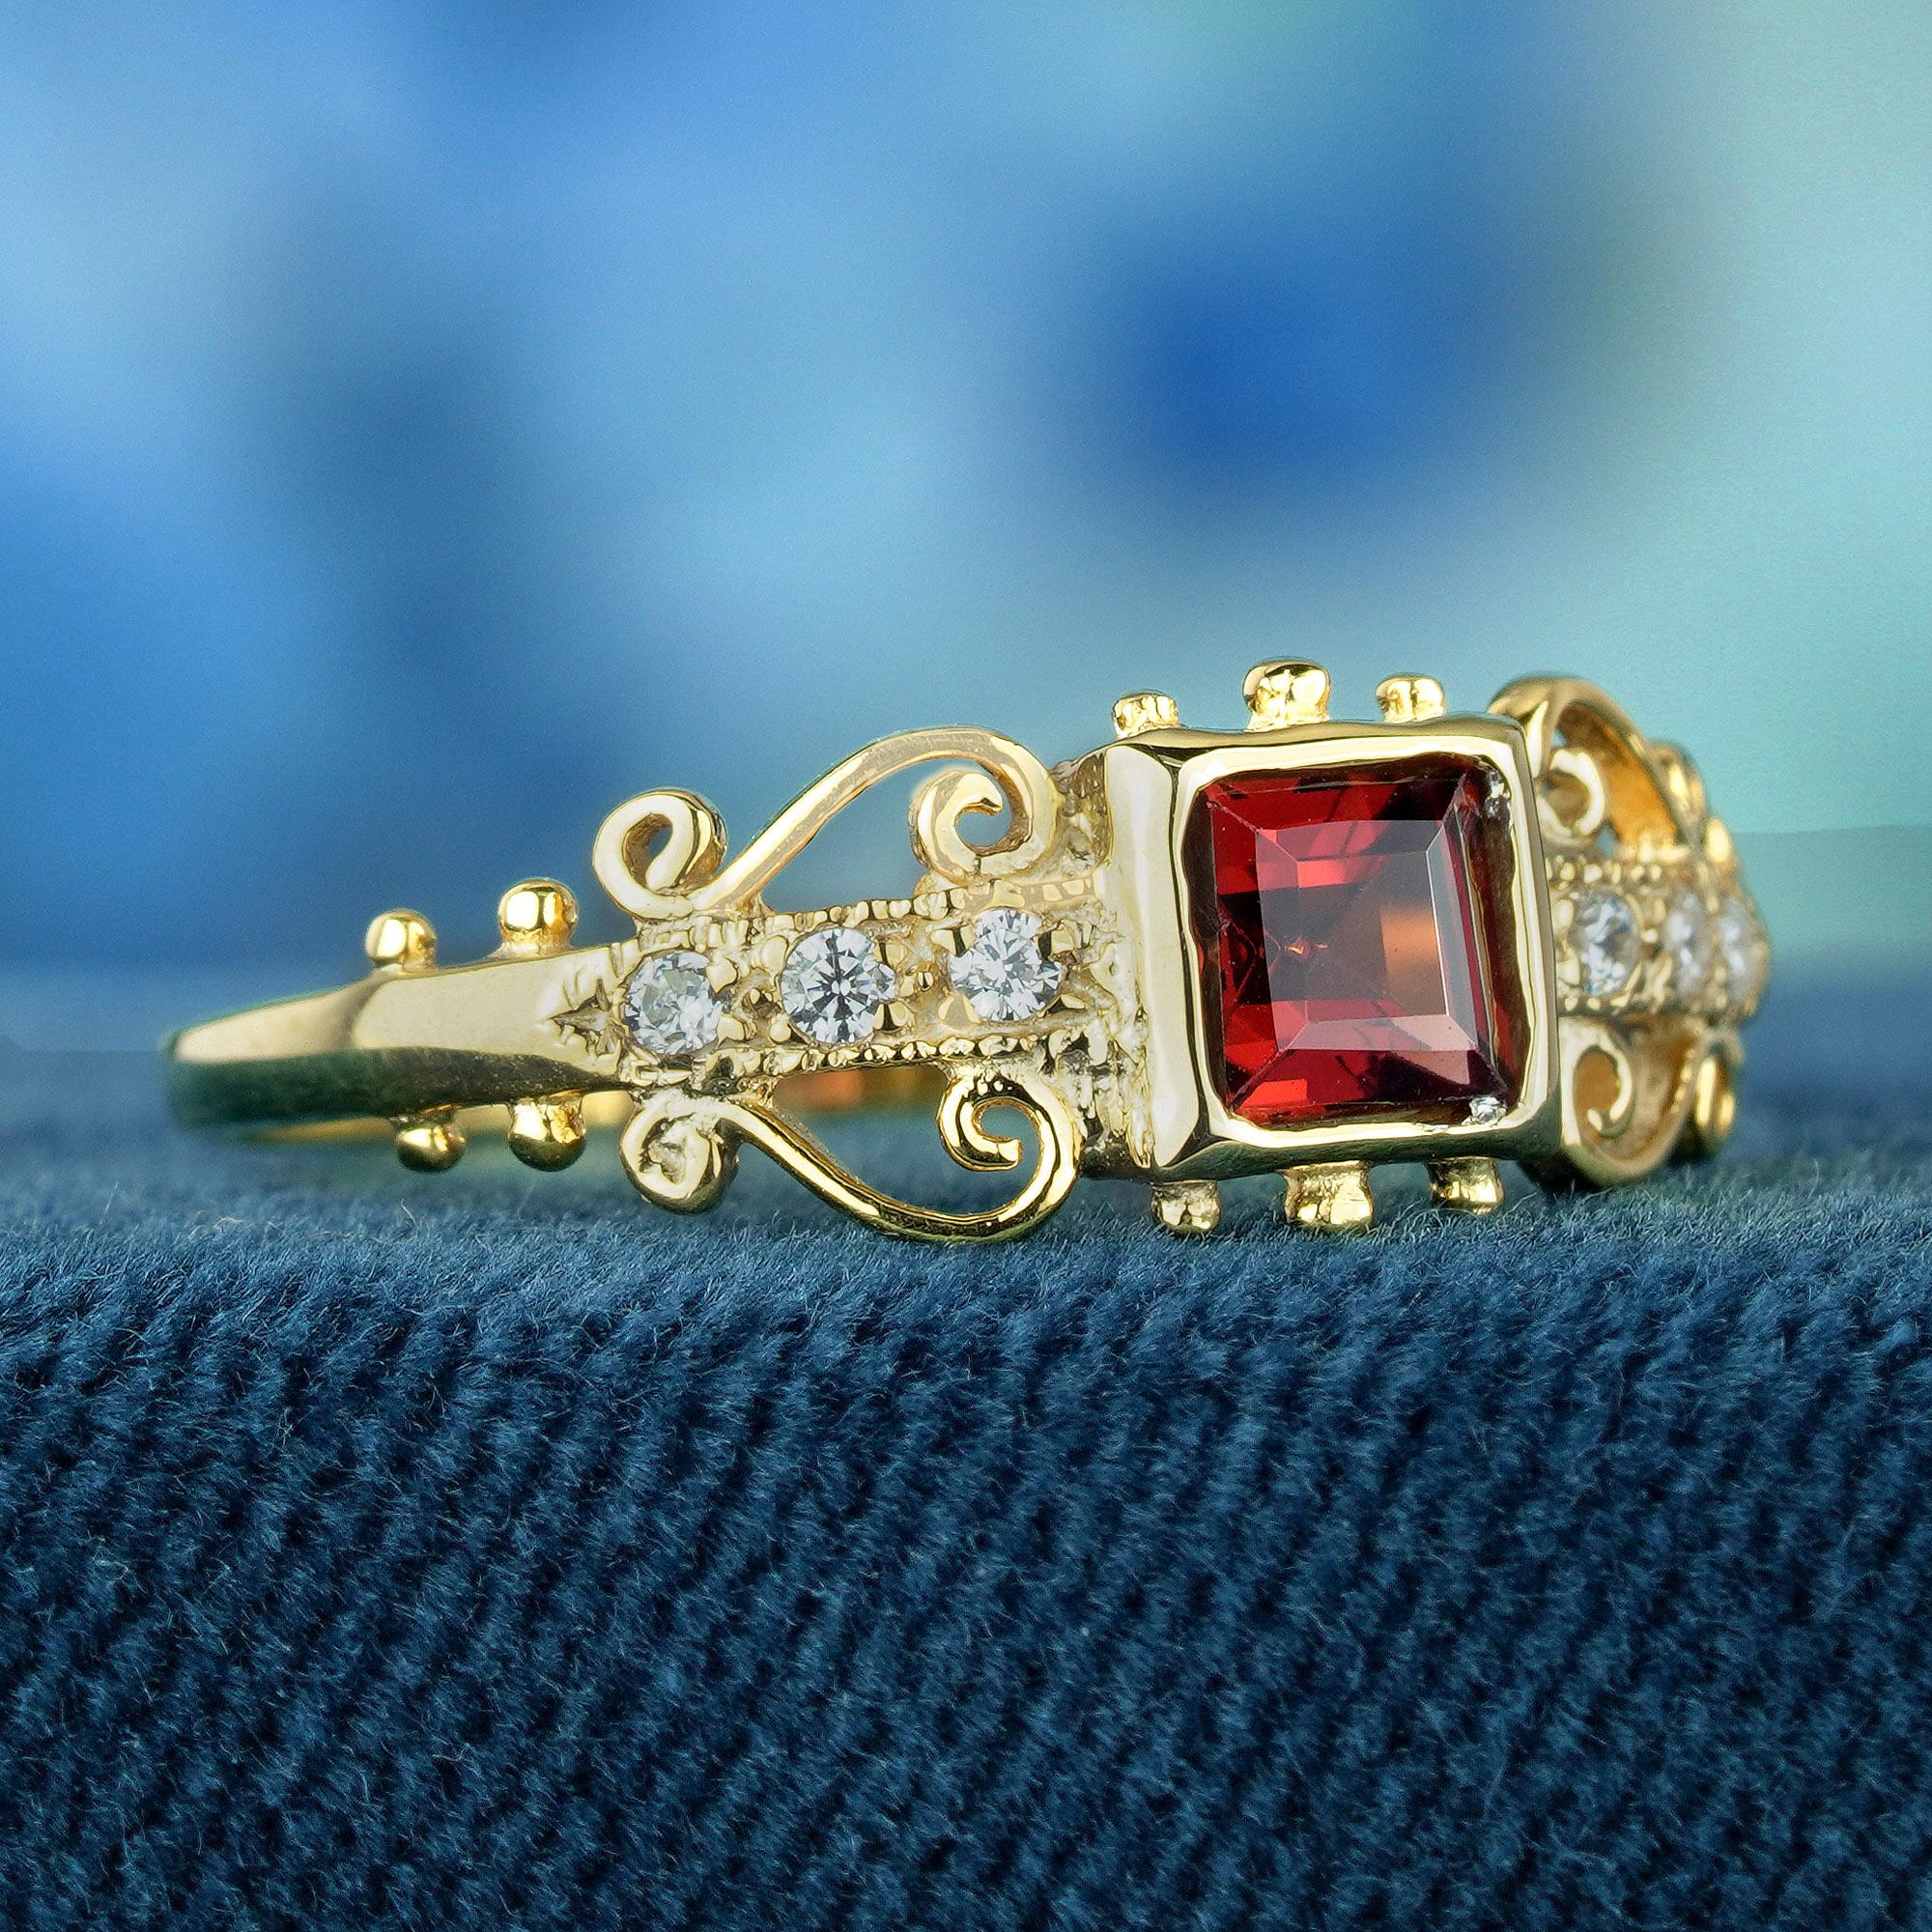 Dieser Ring im Vintage-Stil strahlt Eleganz aus und besticht durch seine filigranen Schnörkel, die seine Schönheit unterstreichen. Mit einem tiefroten Granat im Quadratschliff als Solitär, eingebettet in ein Gelbgoldband, das mit runden,